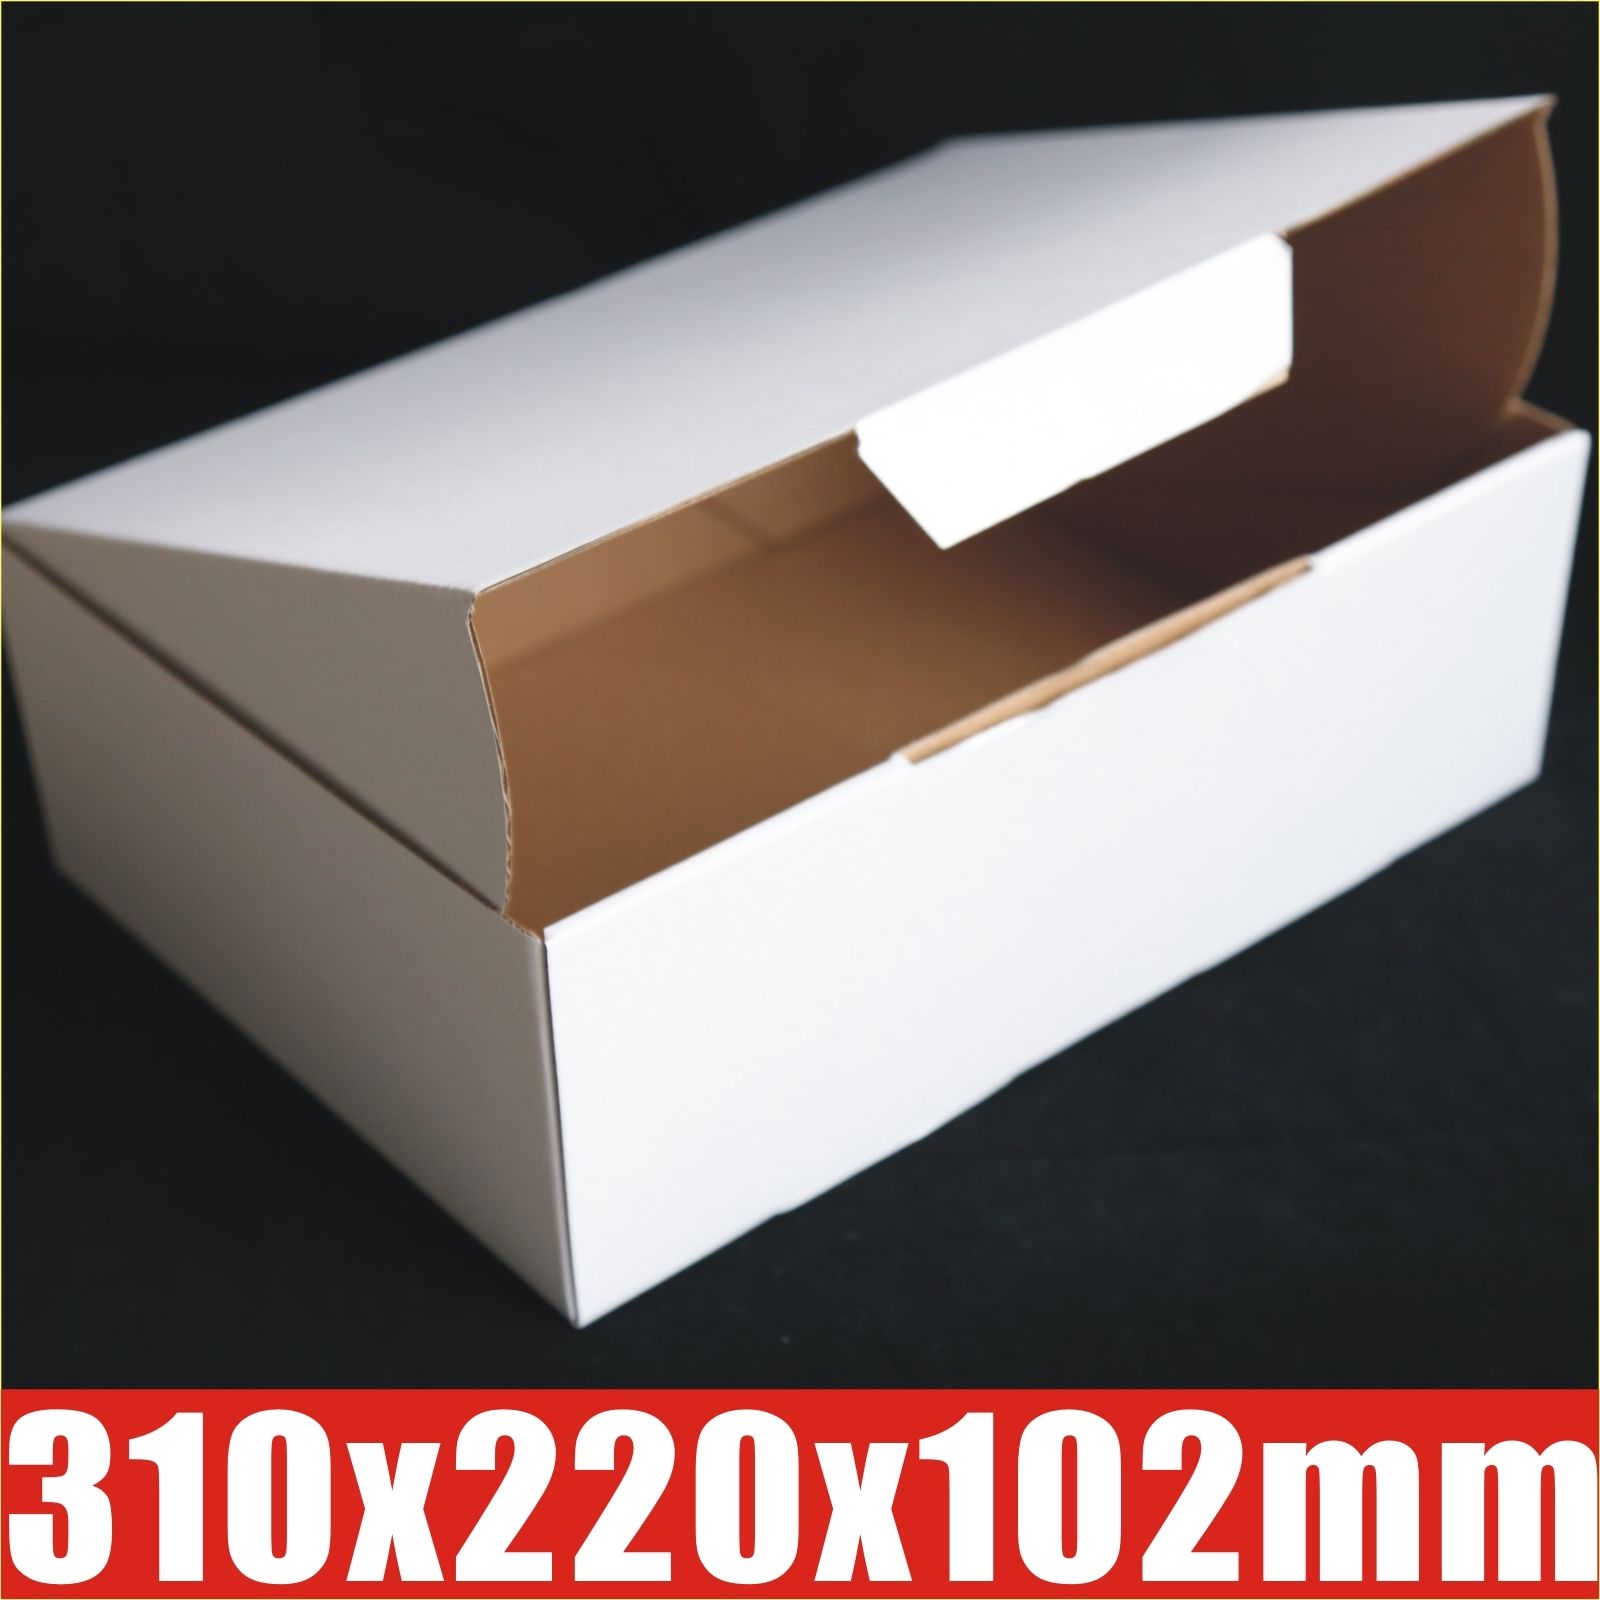 Buy 310x220x102mm Cardboard Box